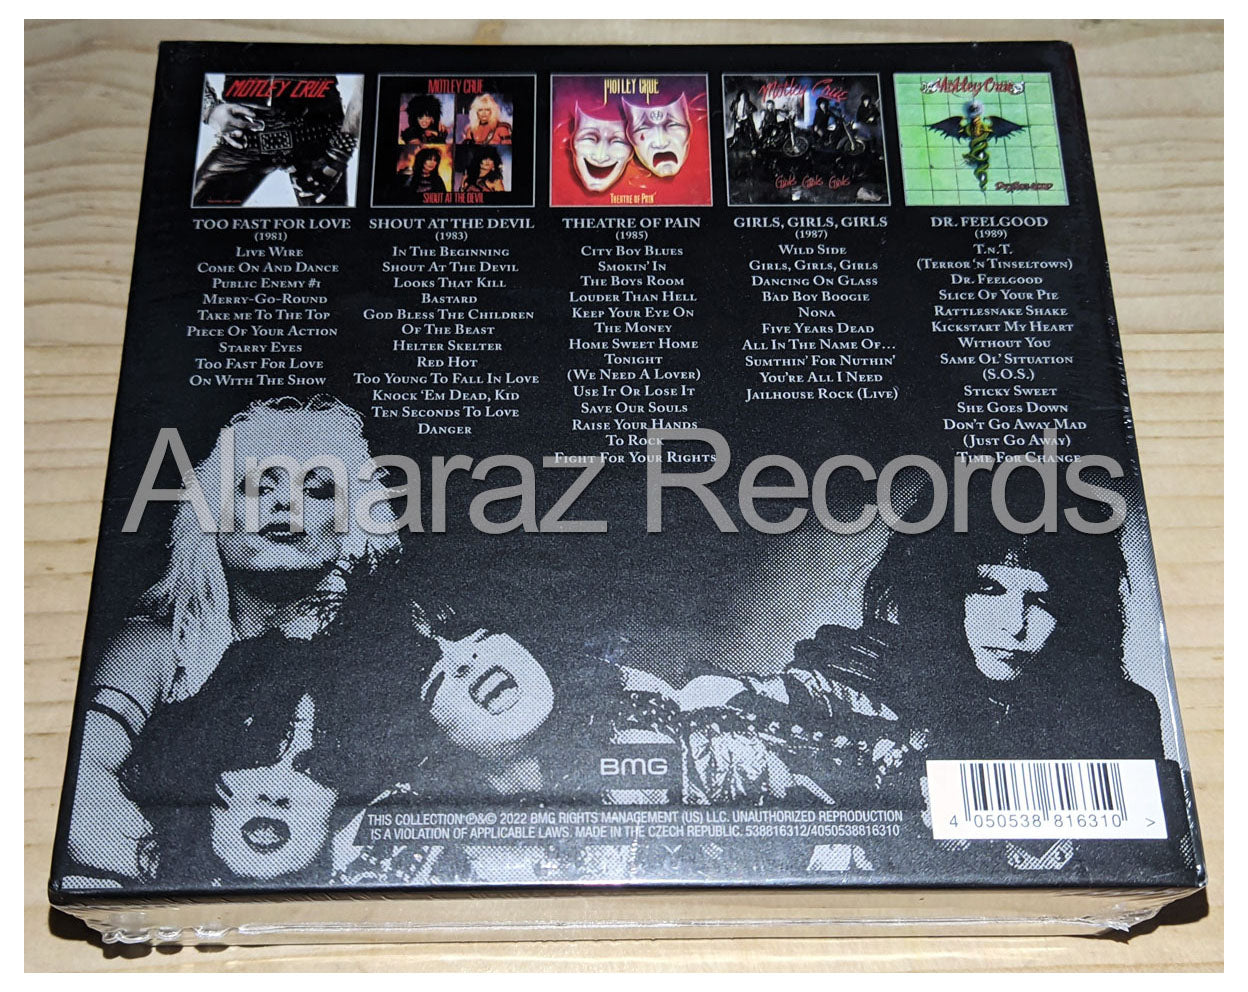 Motley Crue Crucial Crue The Studio Albums 1981-1989 5CD Boxset [Importado]